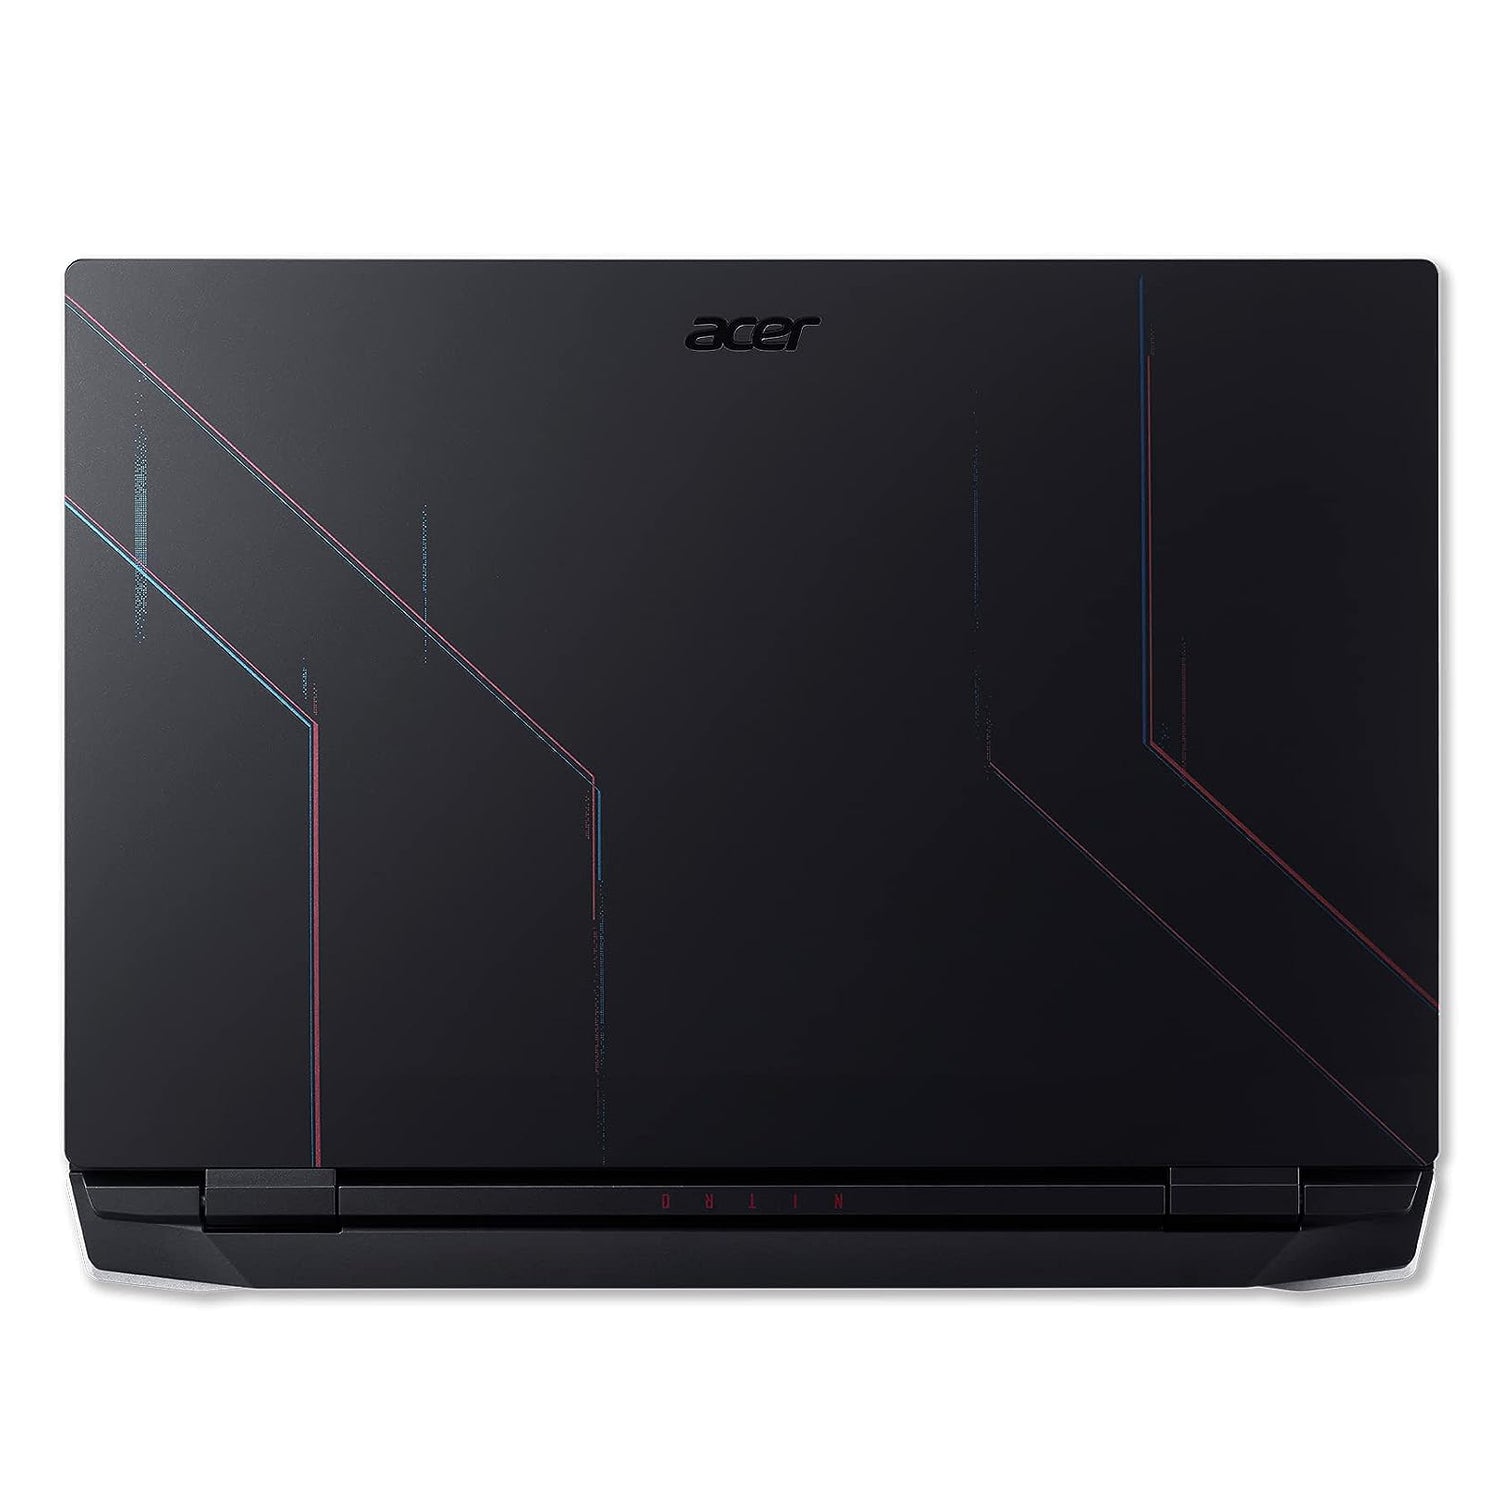 Acer Nitro 5 Gaming Laptop, 15.6